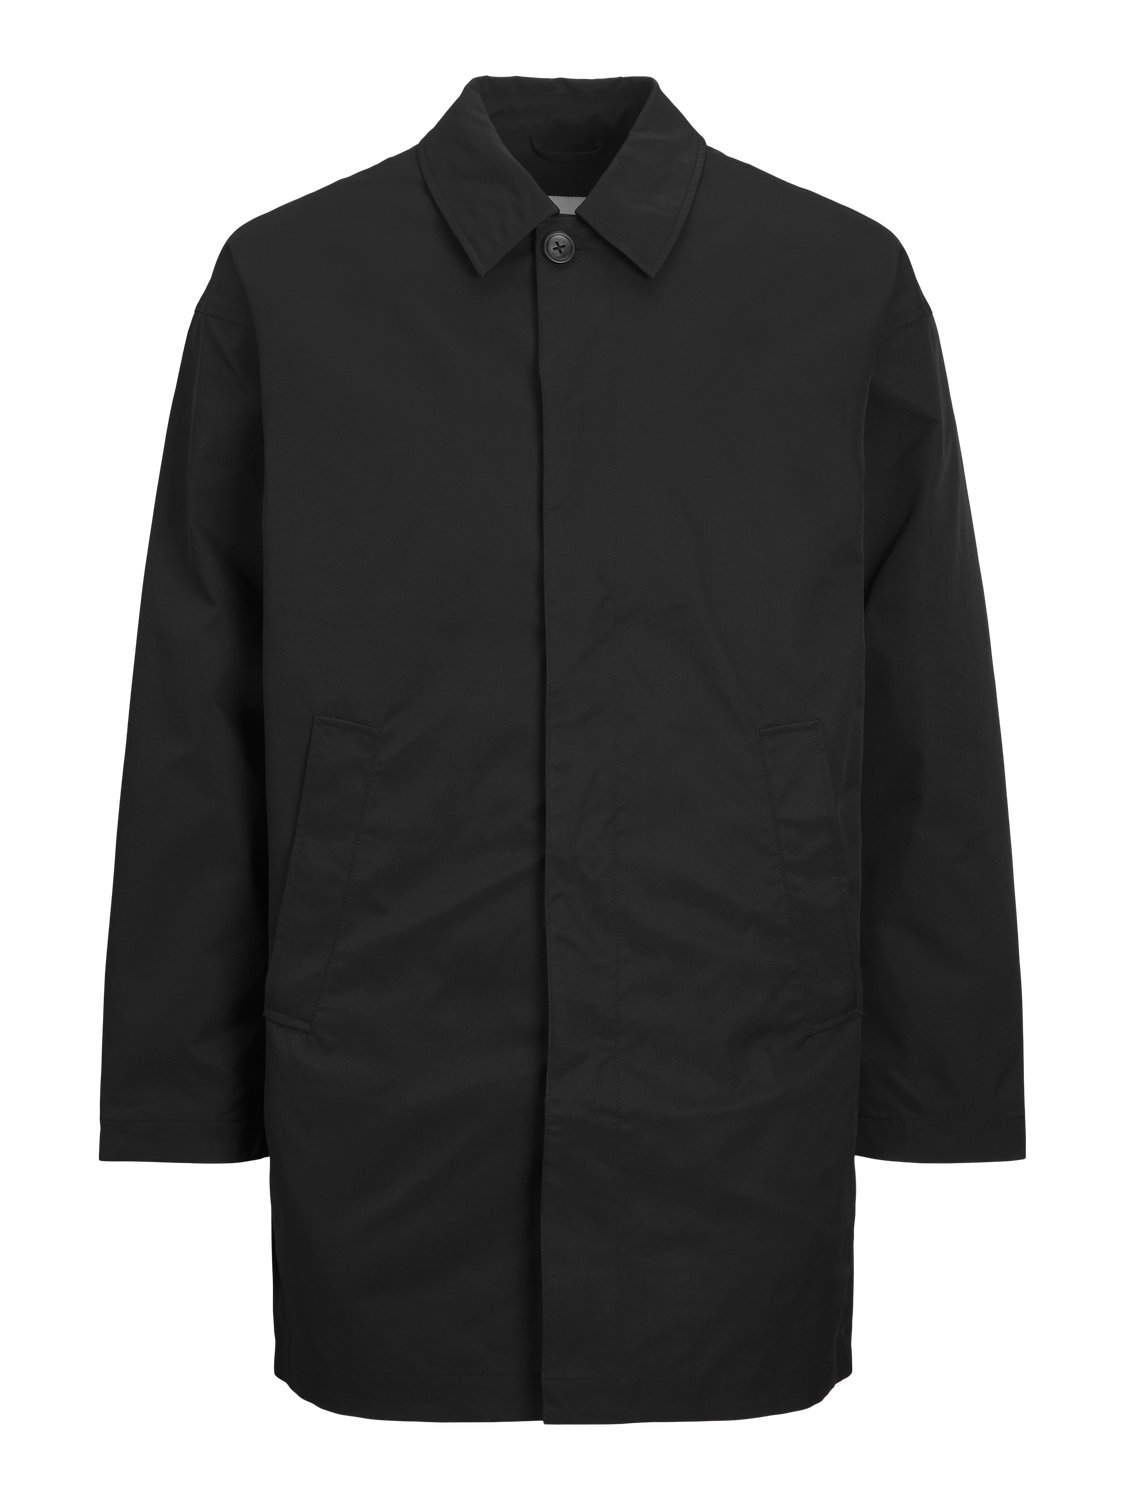 JJECREASE Coat - Black